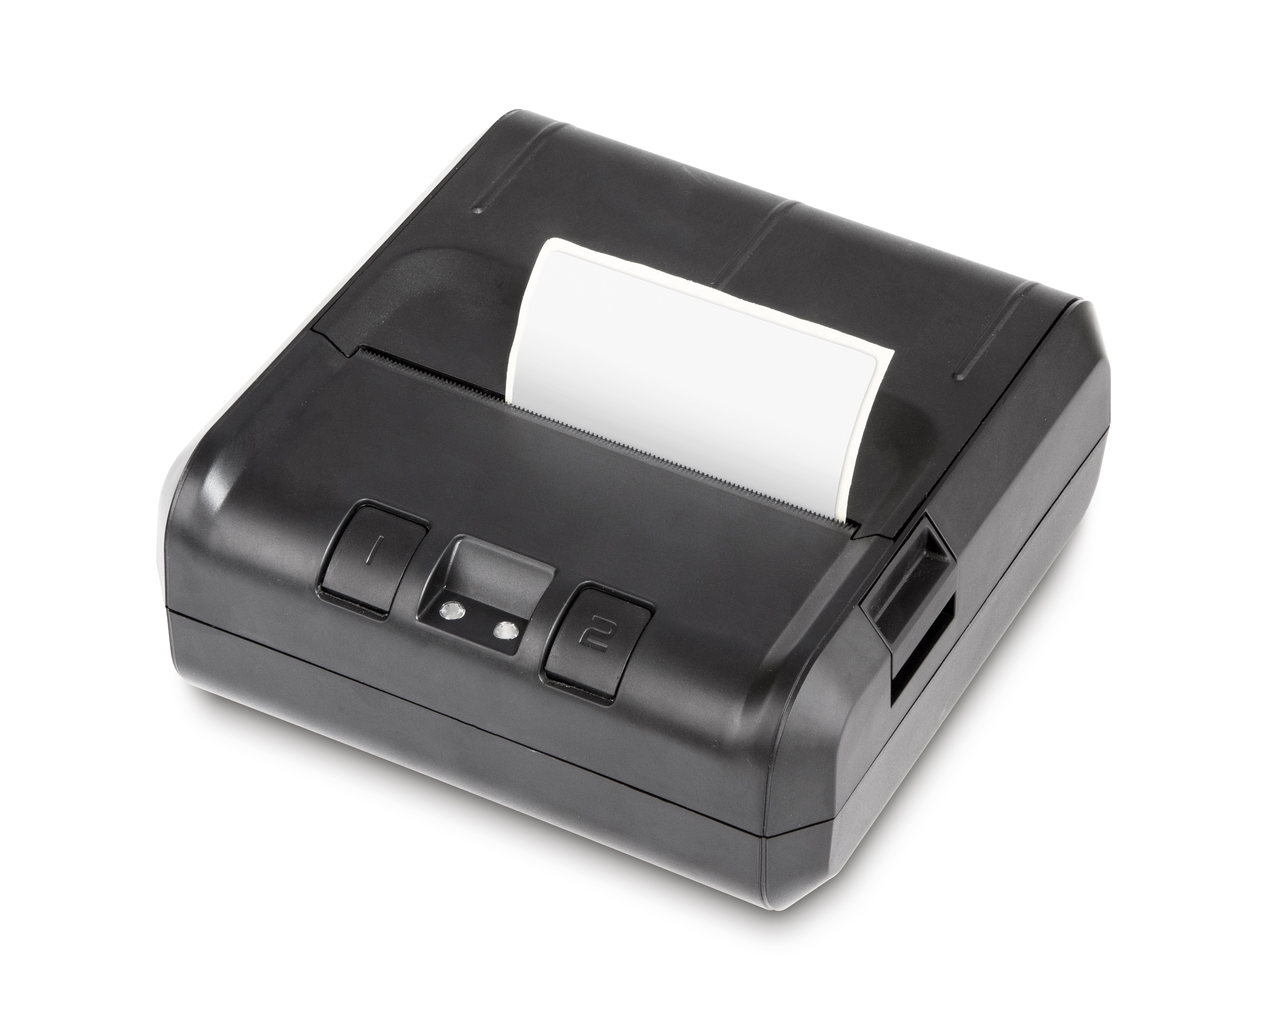 Schwarzer Etikettendrucker auf weißem Hintergrund. Eine weiße Etikette ragt als Beispiel aus dem Drucker raus. Auf der Vorderseite gibt es zwei Knöpfe.